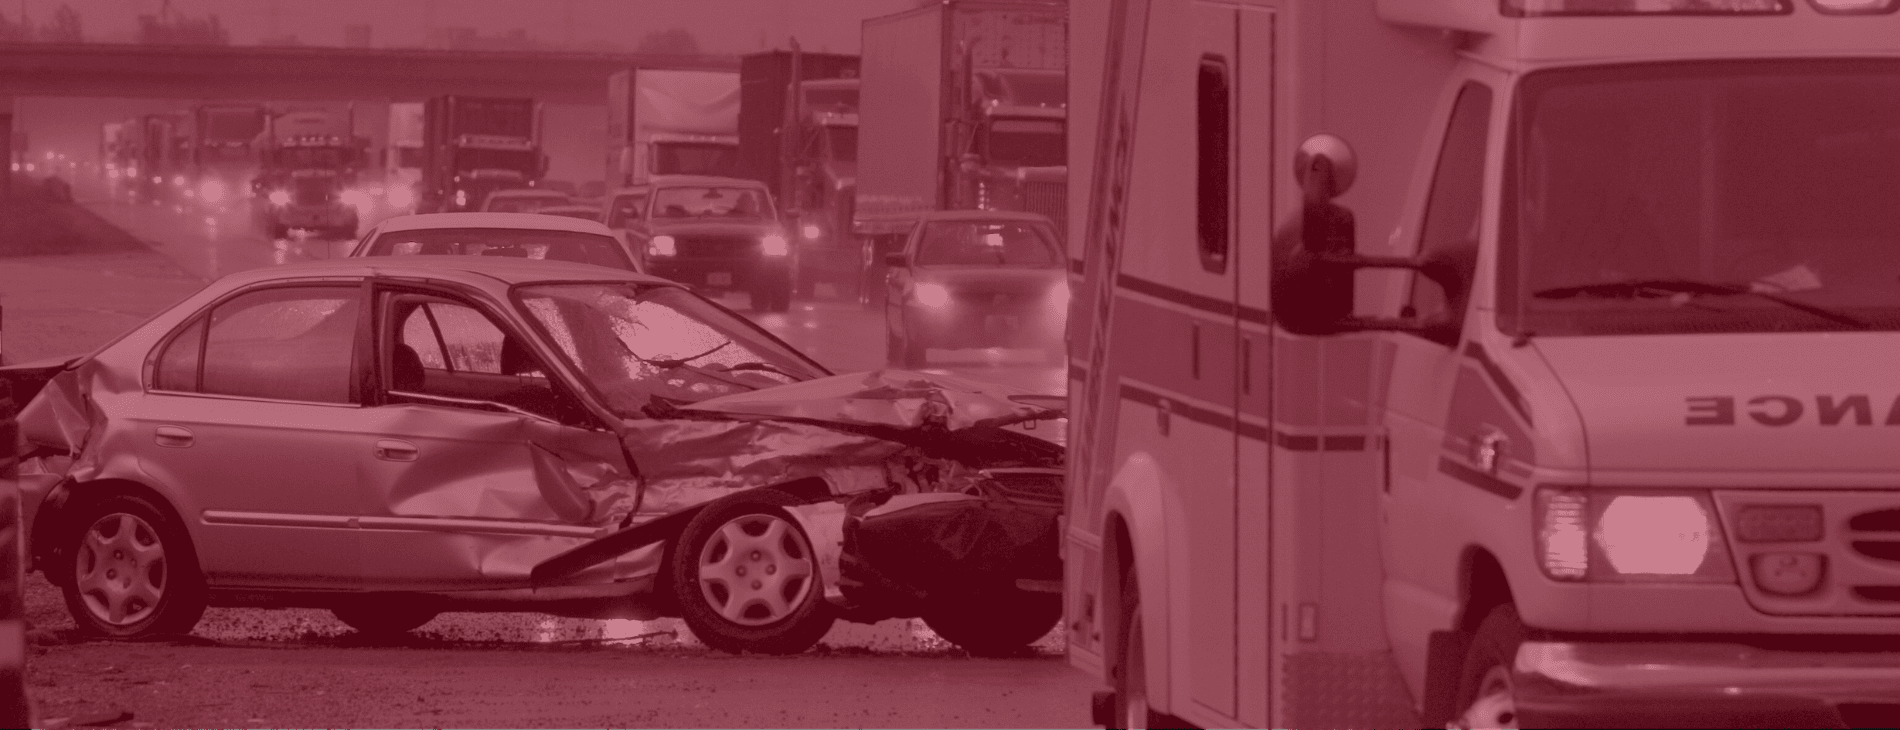 Stockton car crash